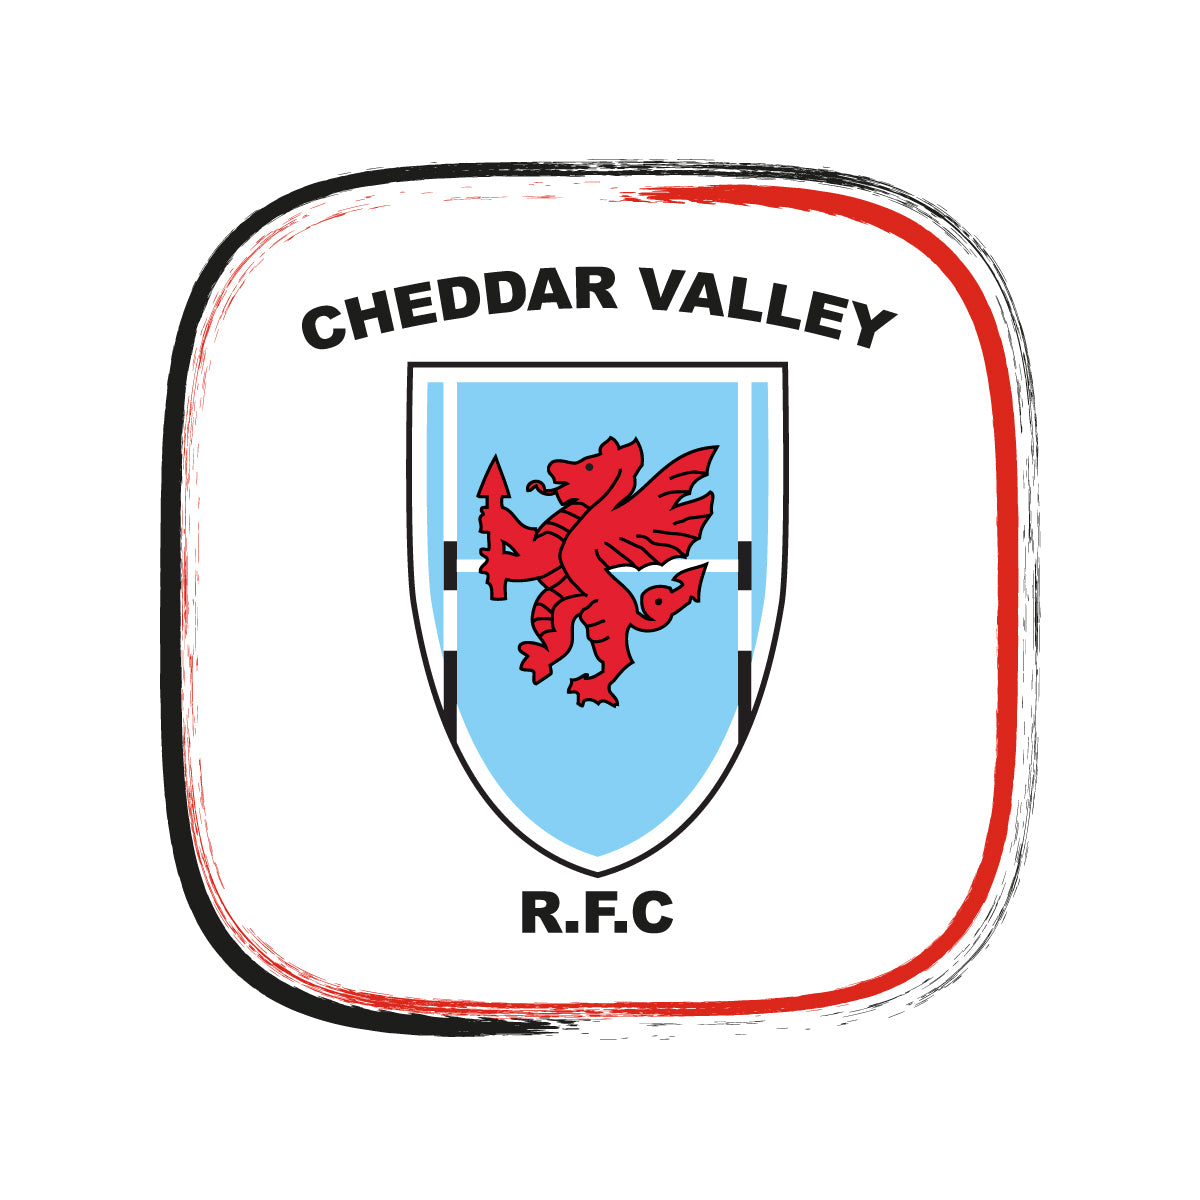 Cheddar Valley RFC